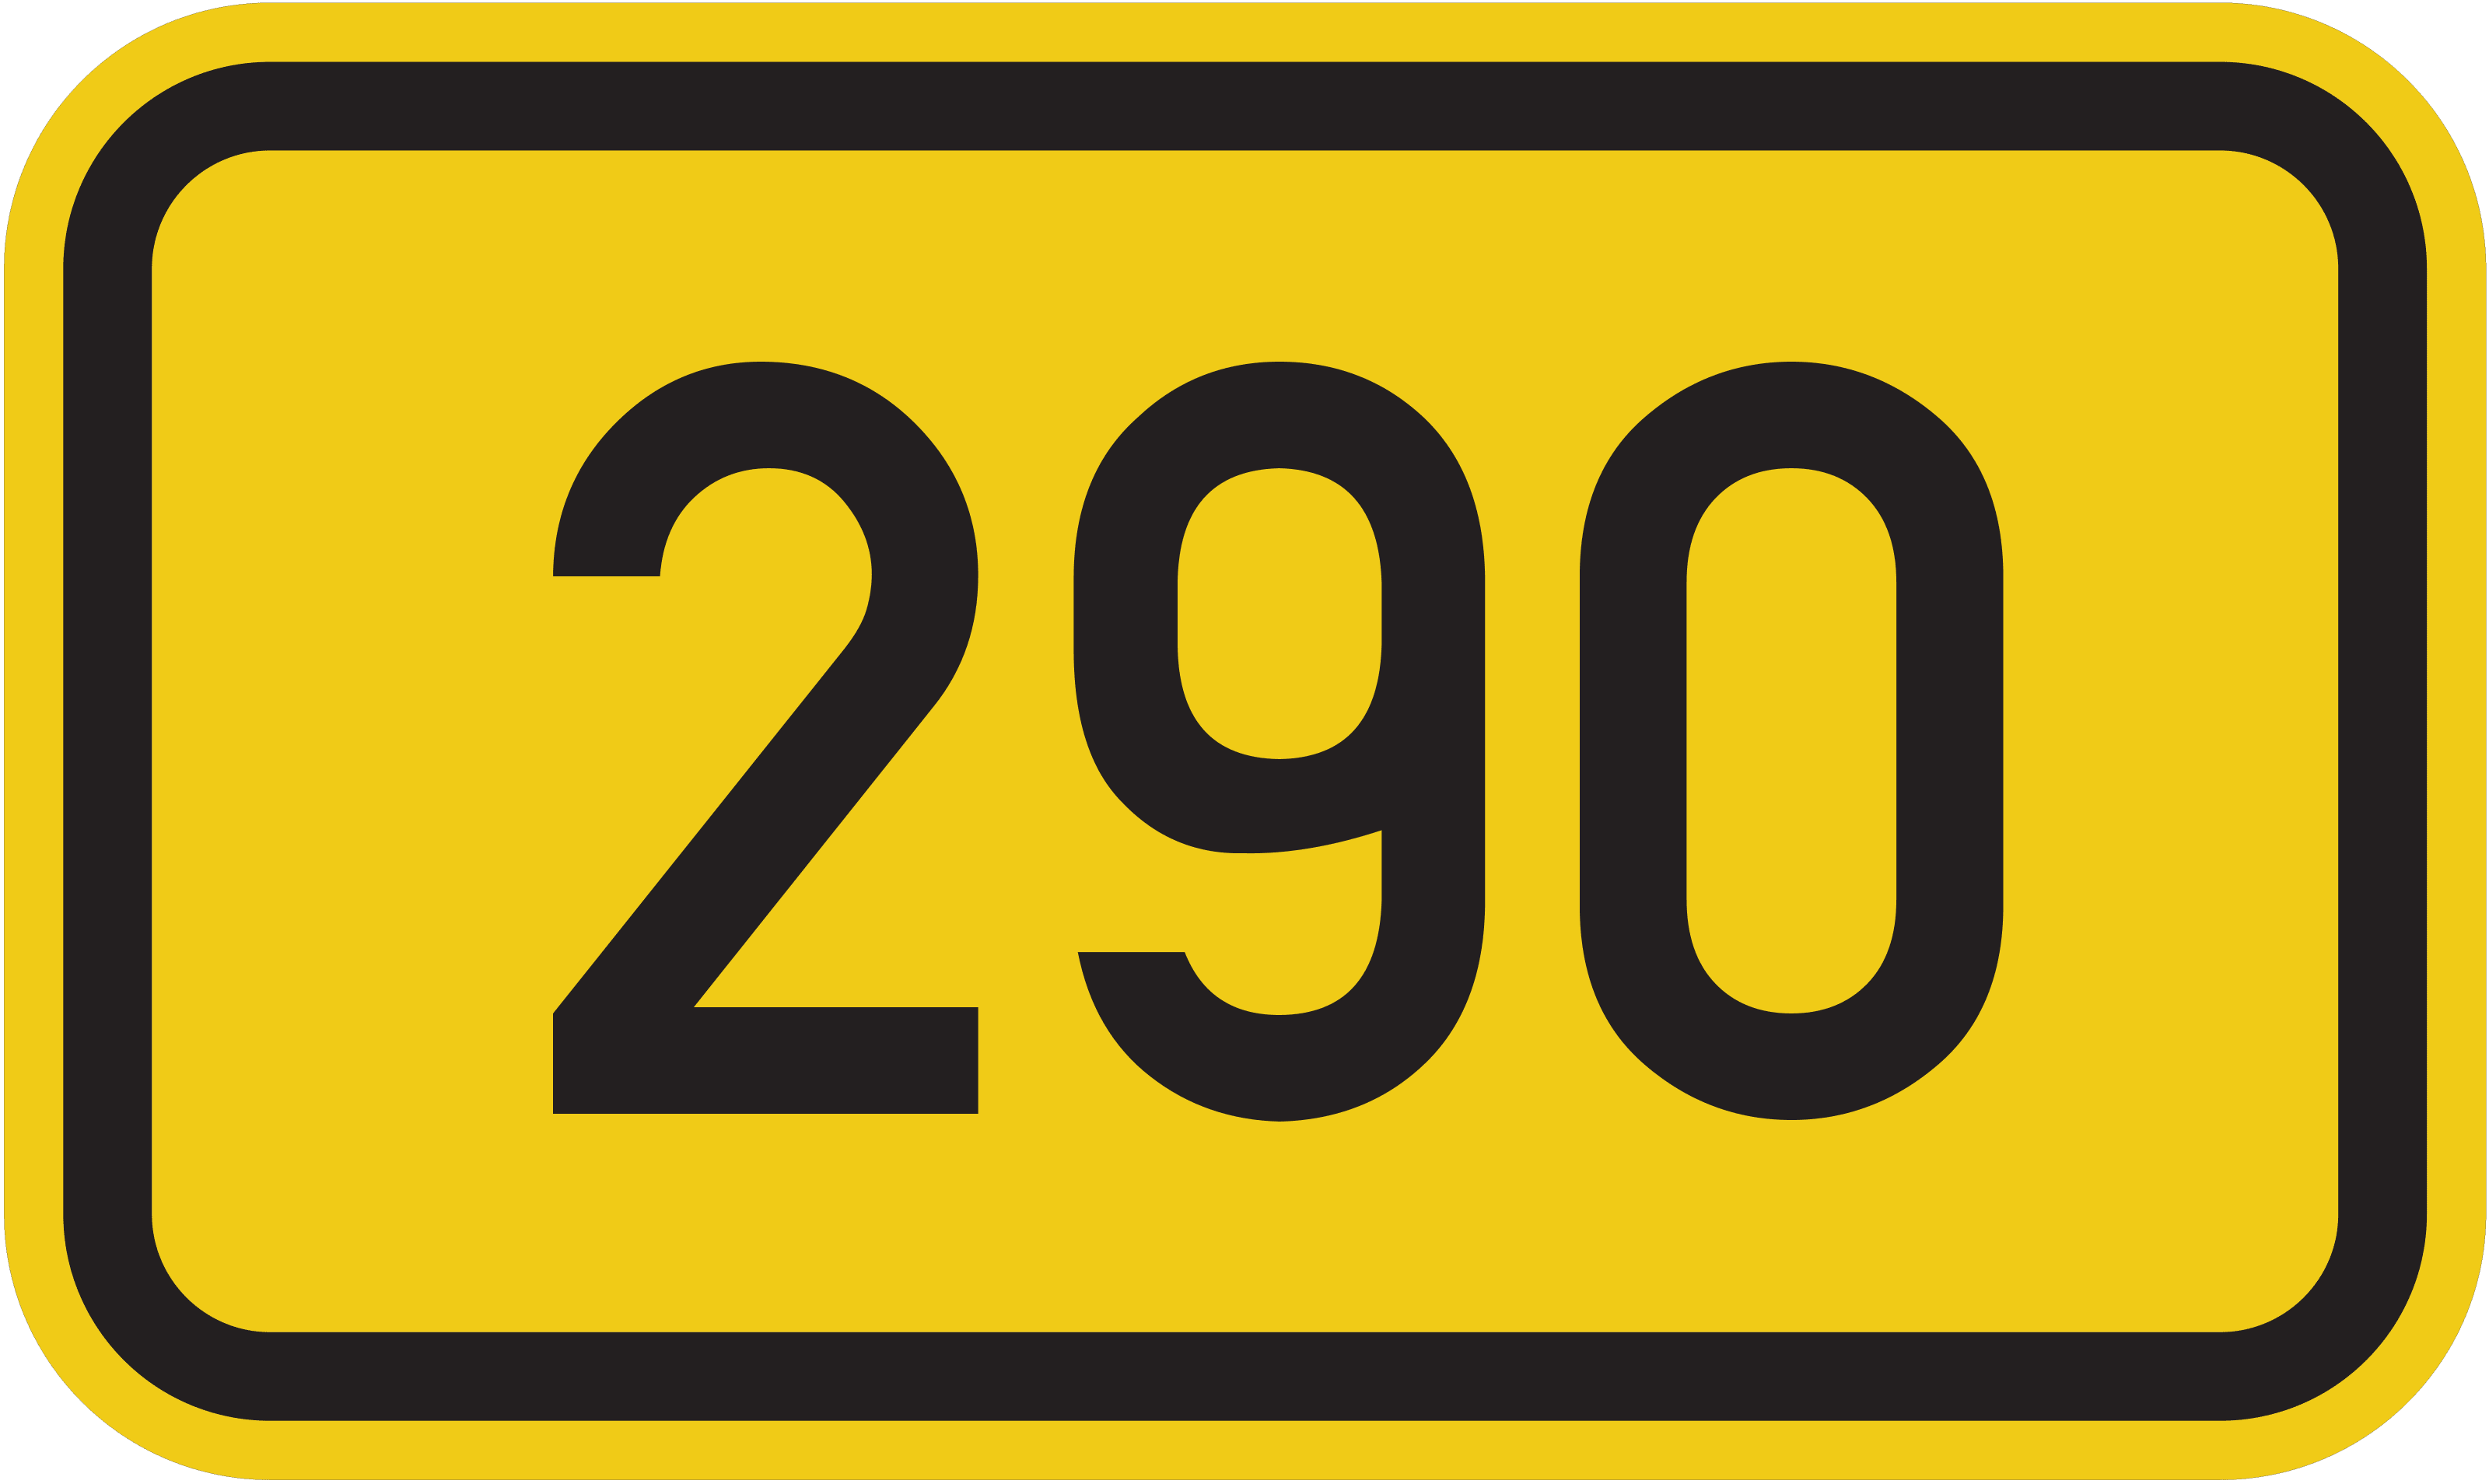 Bundesstraße B 290